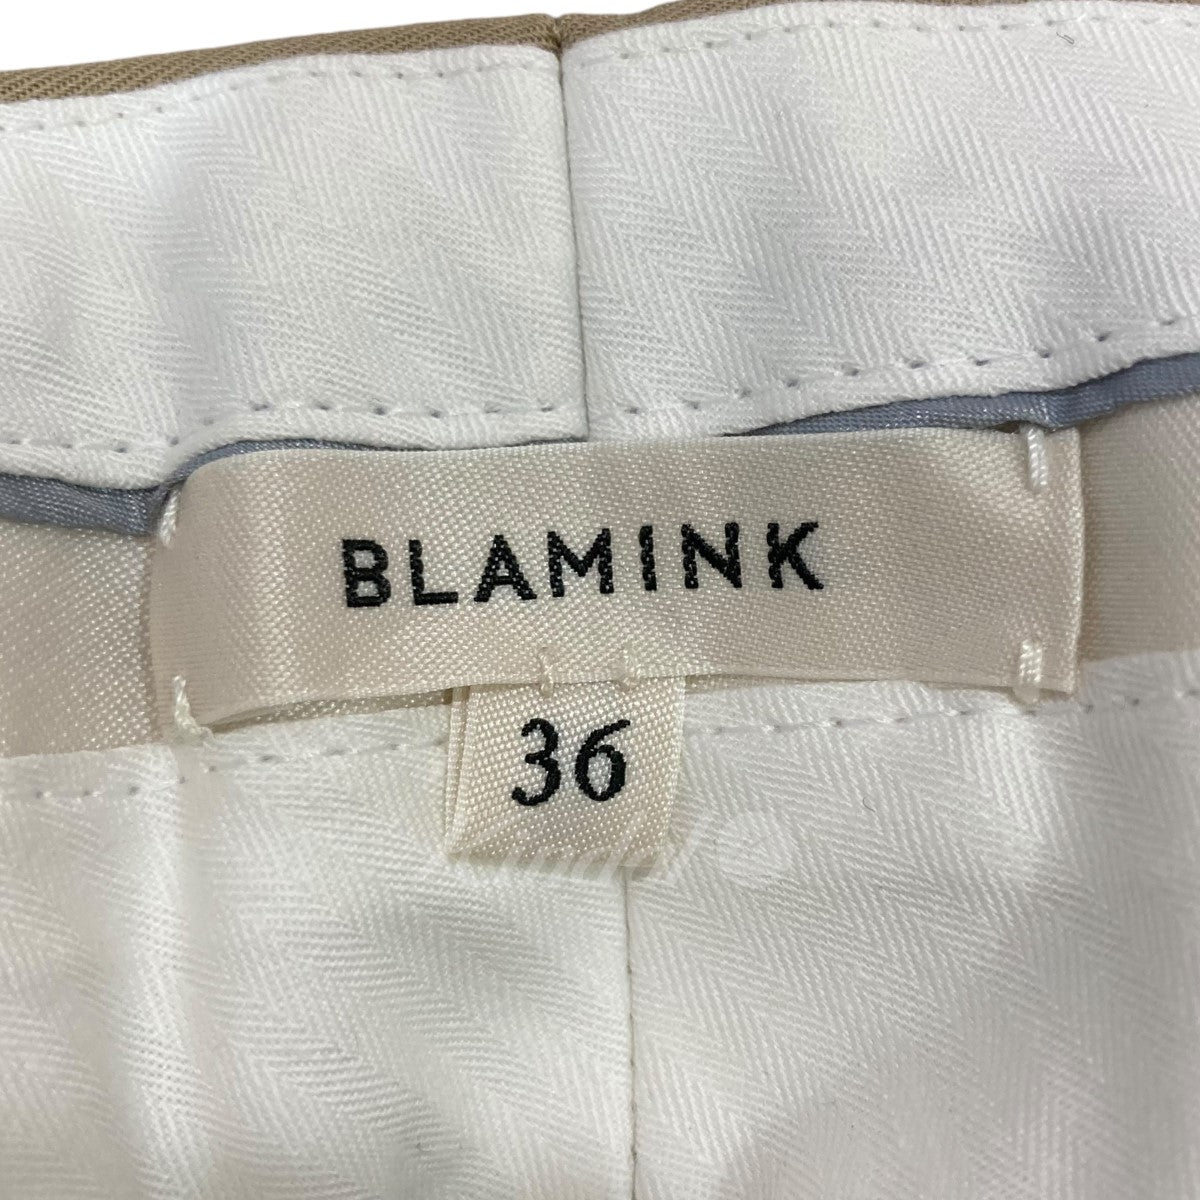 BLAMINK(ブラミンク) ストレートパンツ 79142990226 ベージュ サイズ S ...